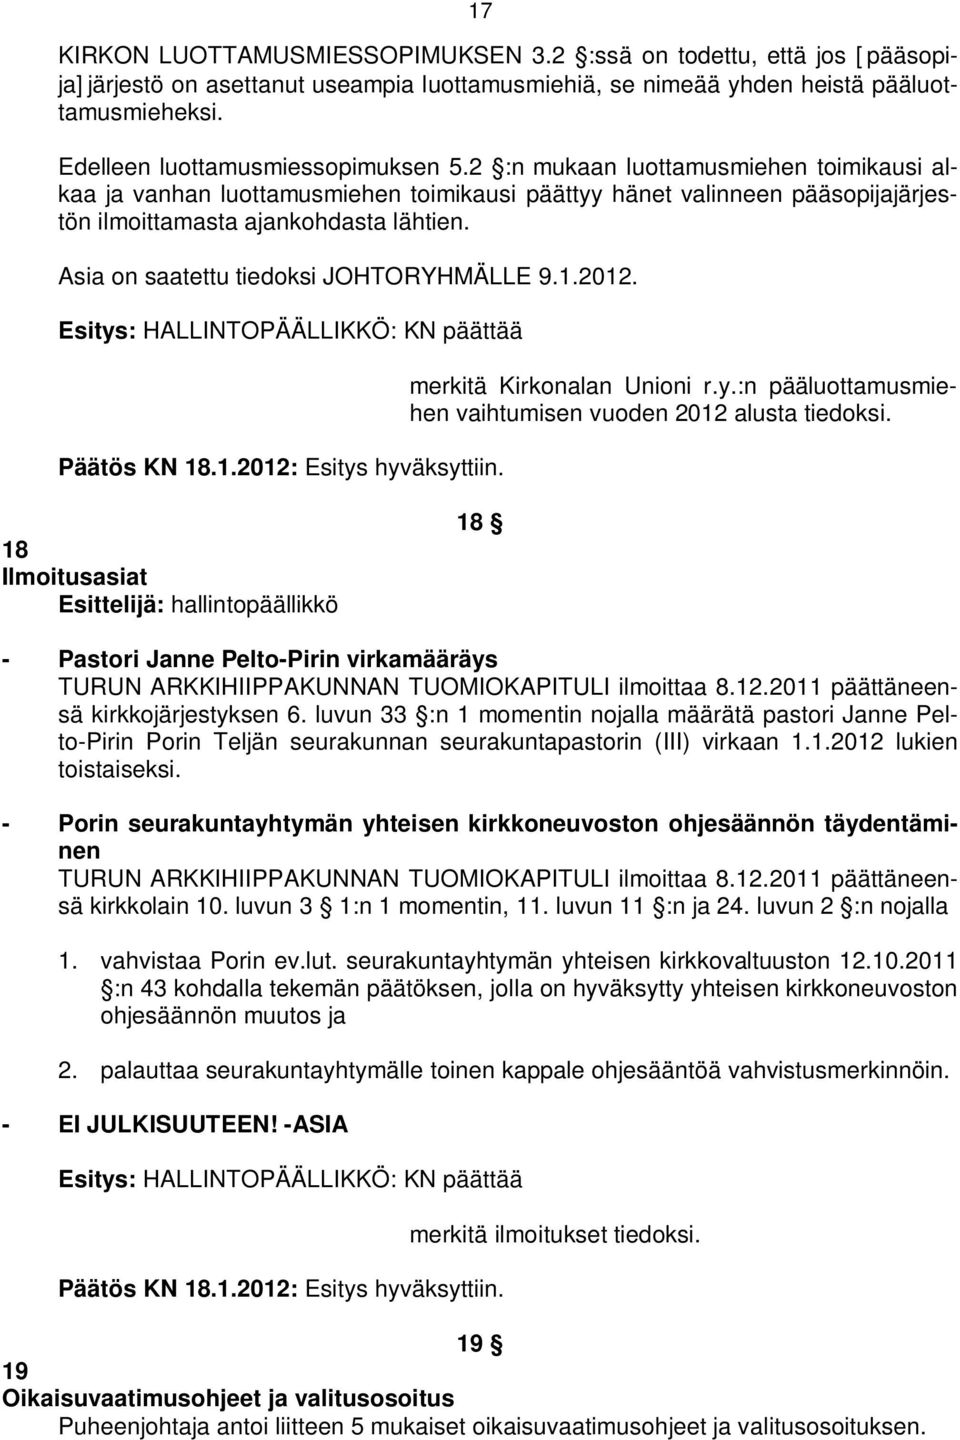 Esitys: HALLINTOPÄÄLLIKKÖ: KN päättää Päätös KN 18.1.2012: Esitys hyväksyttiin. merkitä Kirkonalan Unioni r.y.:n pääluottamusmiehen vaihtumisen vuoden 2012 alusta tiedoksi.